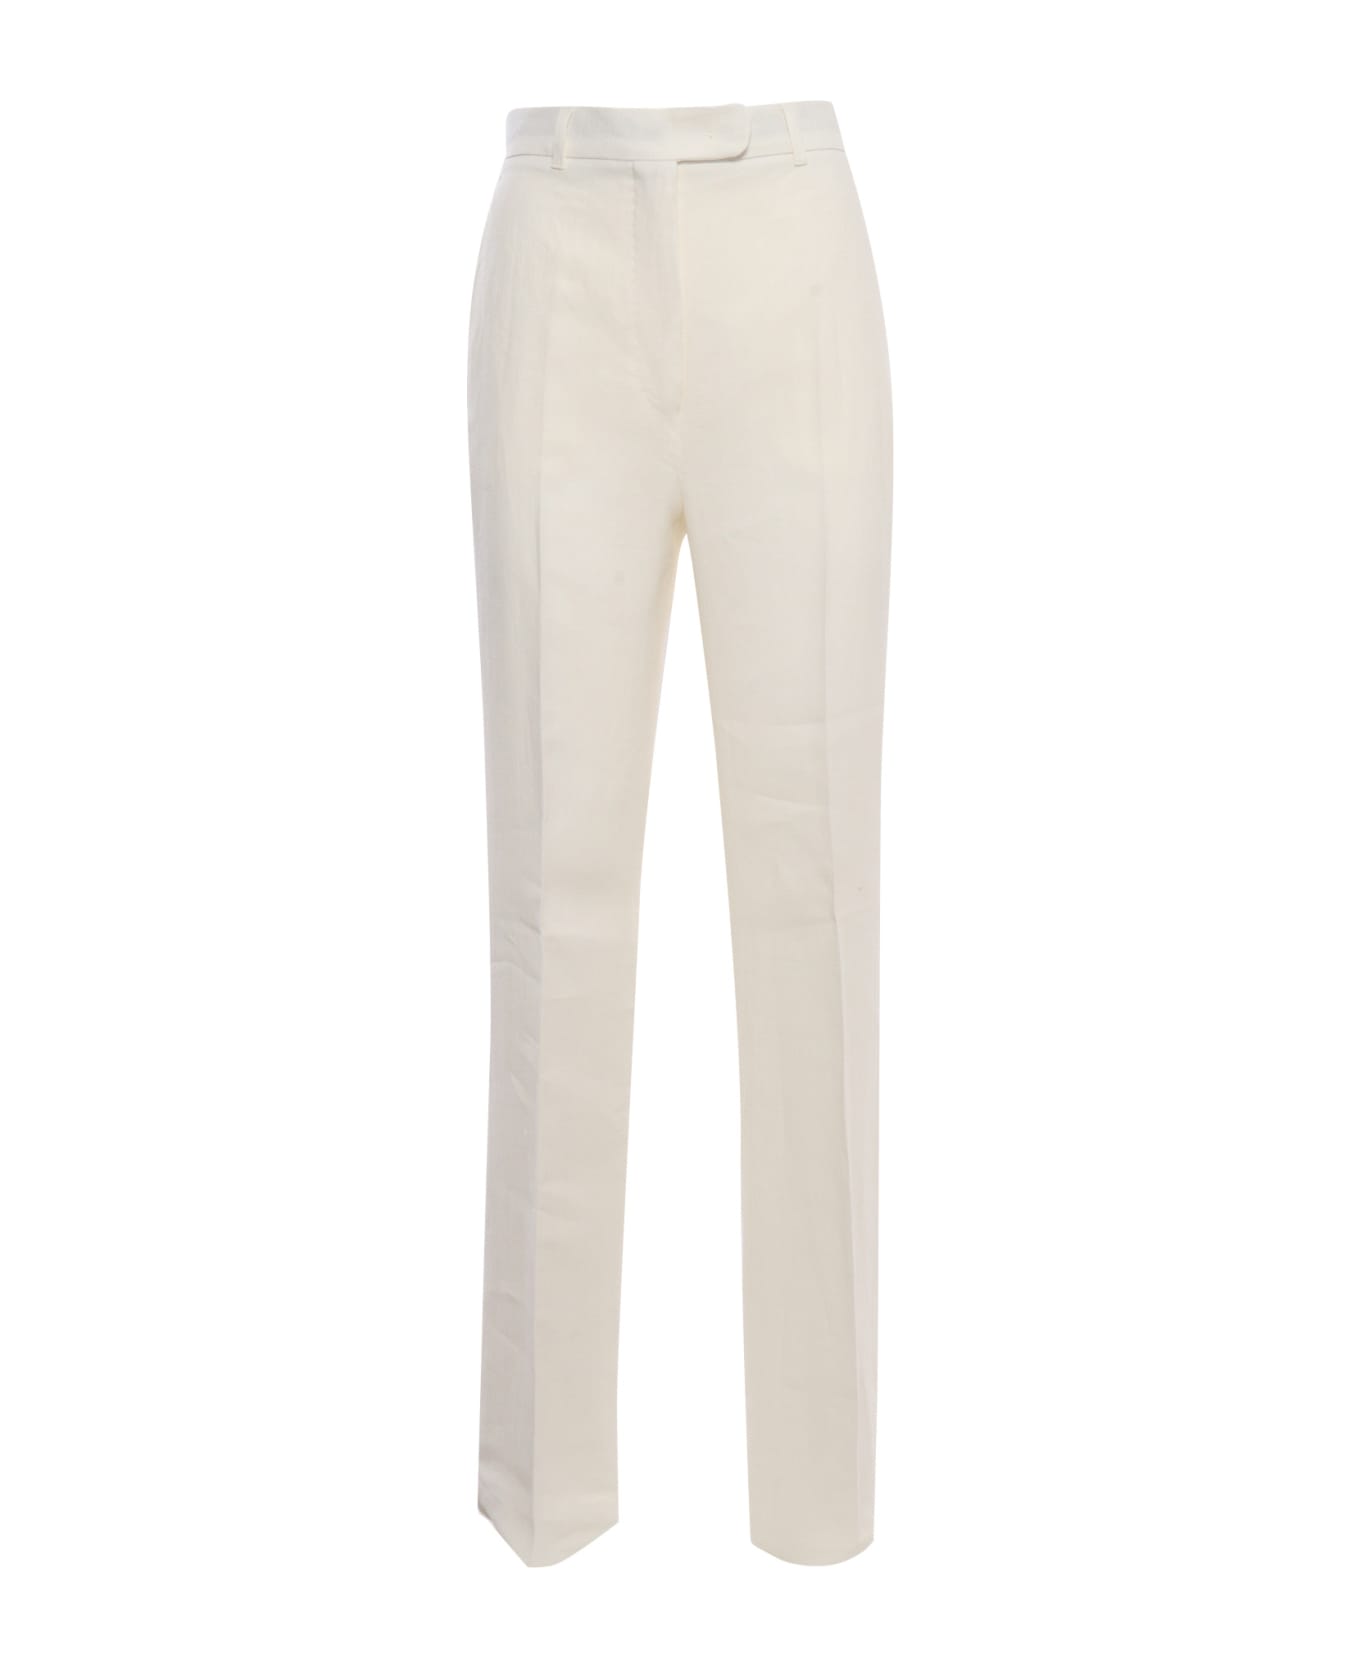 Max Mara Studio Alcano White Trousers - WHITE ボトムス